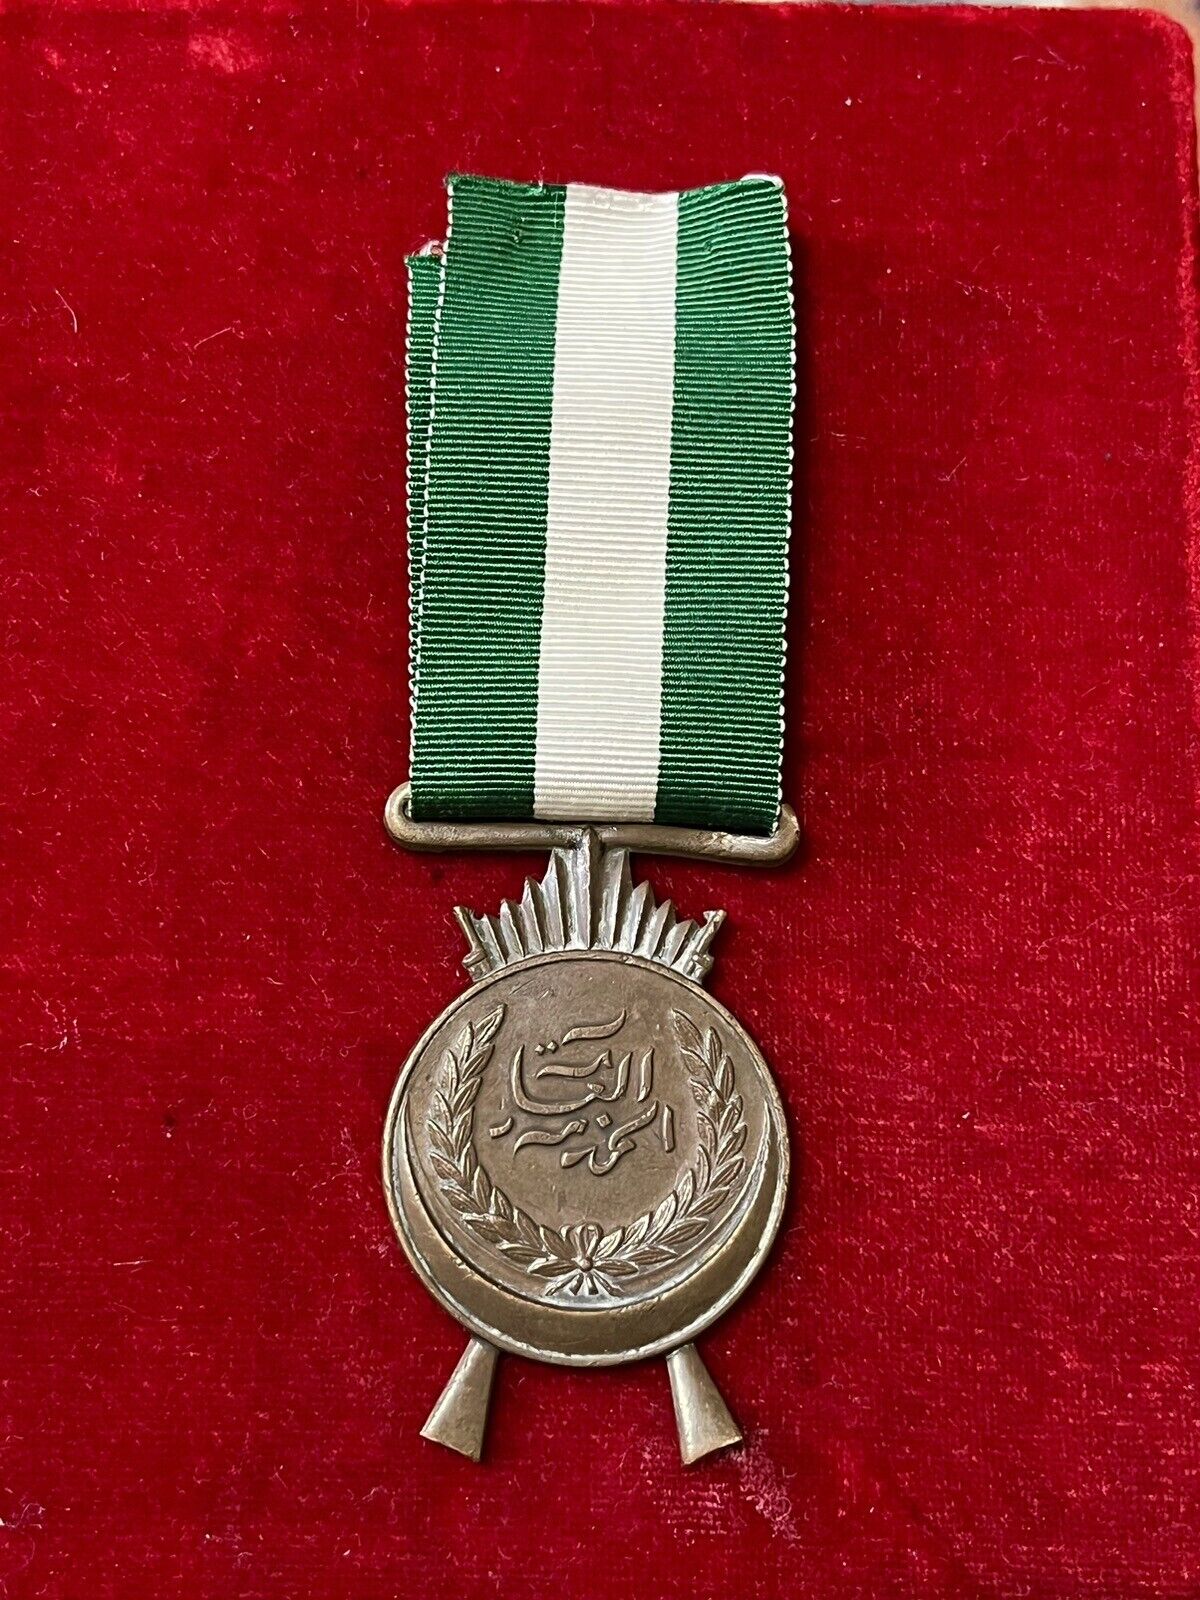 Iraq-1926 Kingdom of Iraq General Service Medal